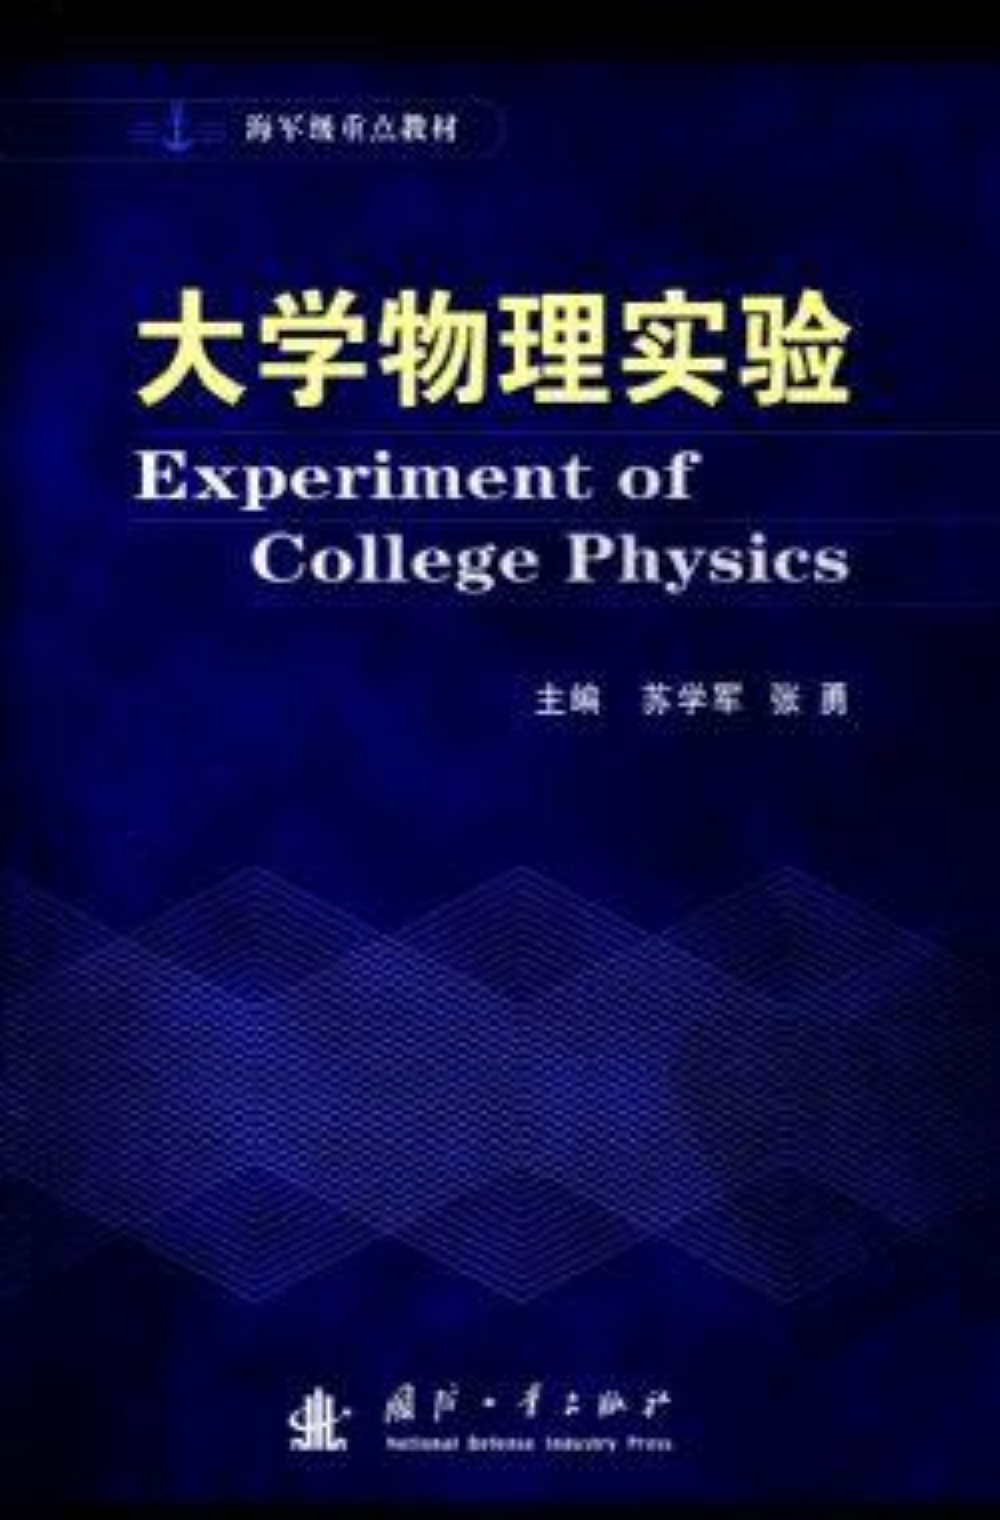 大學物理實驗(張勇主編圖書)